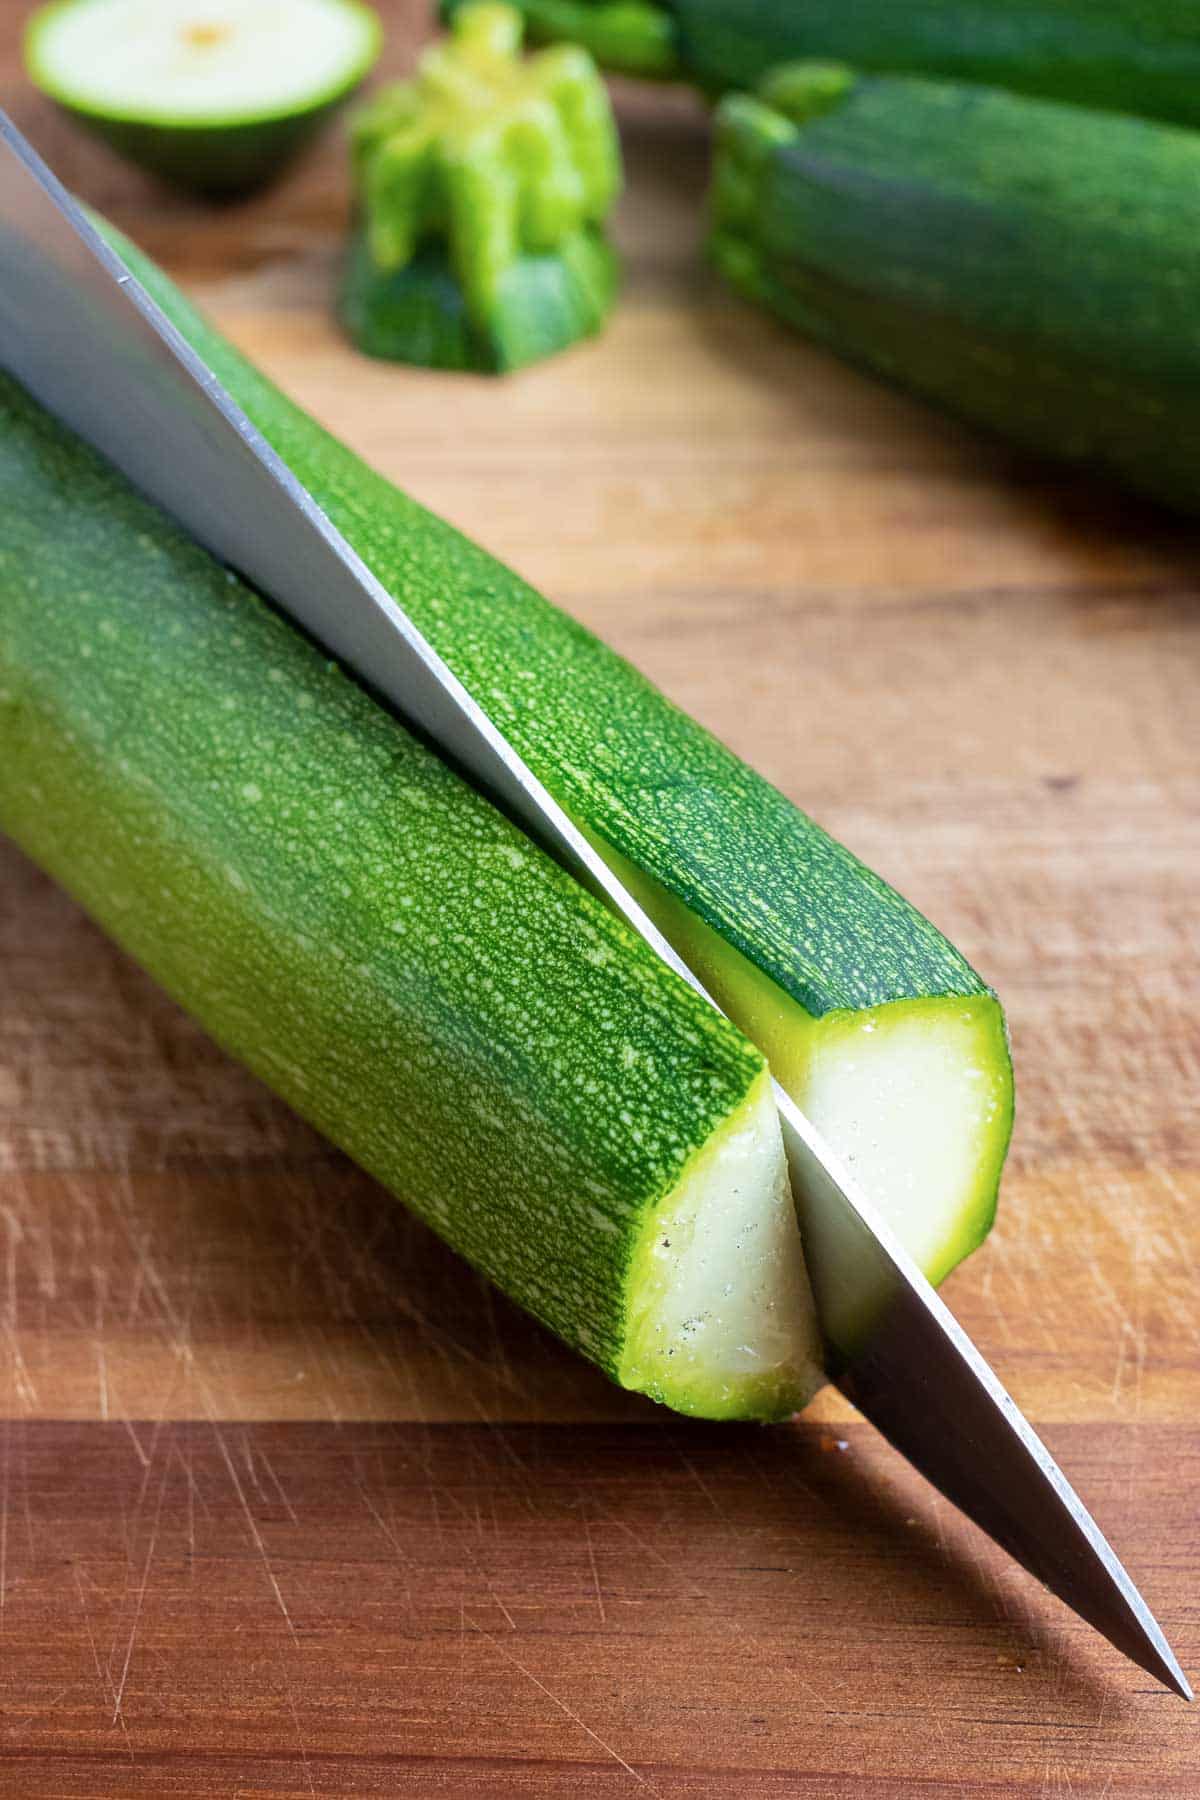 A zucchini is cut in half longways.